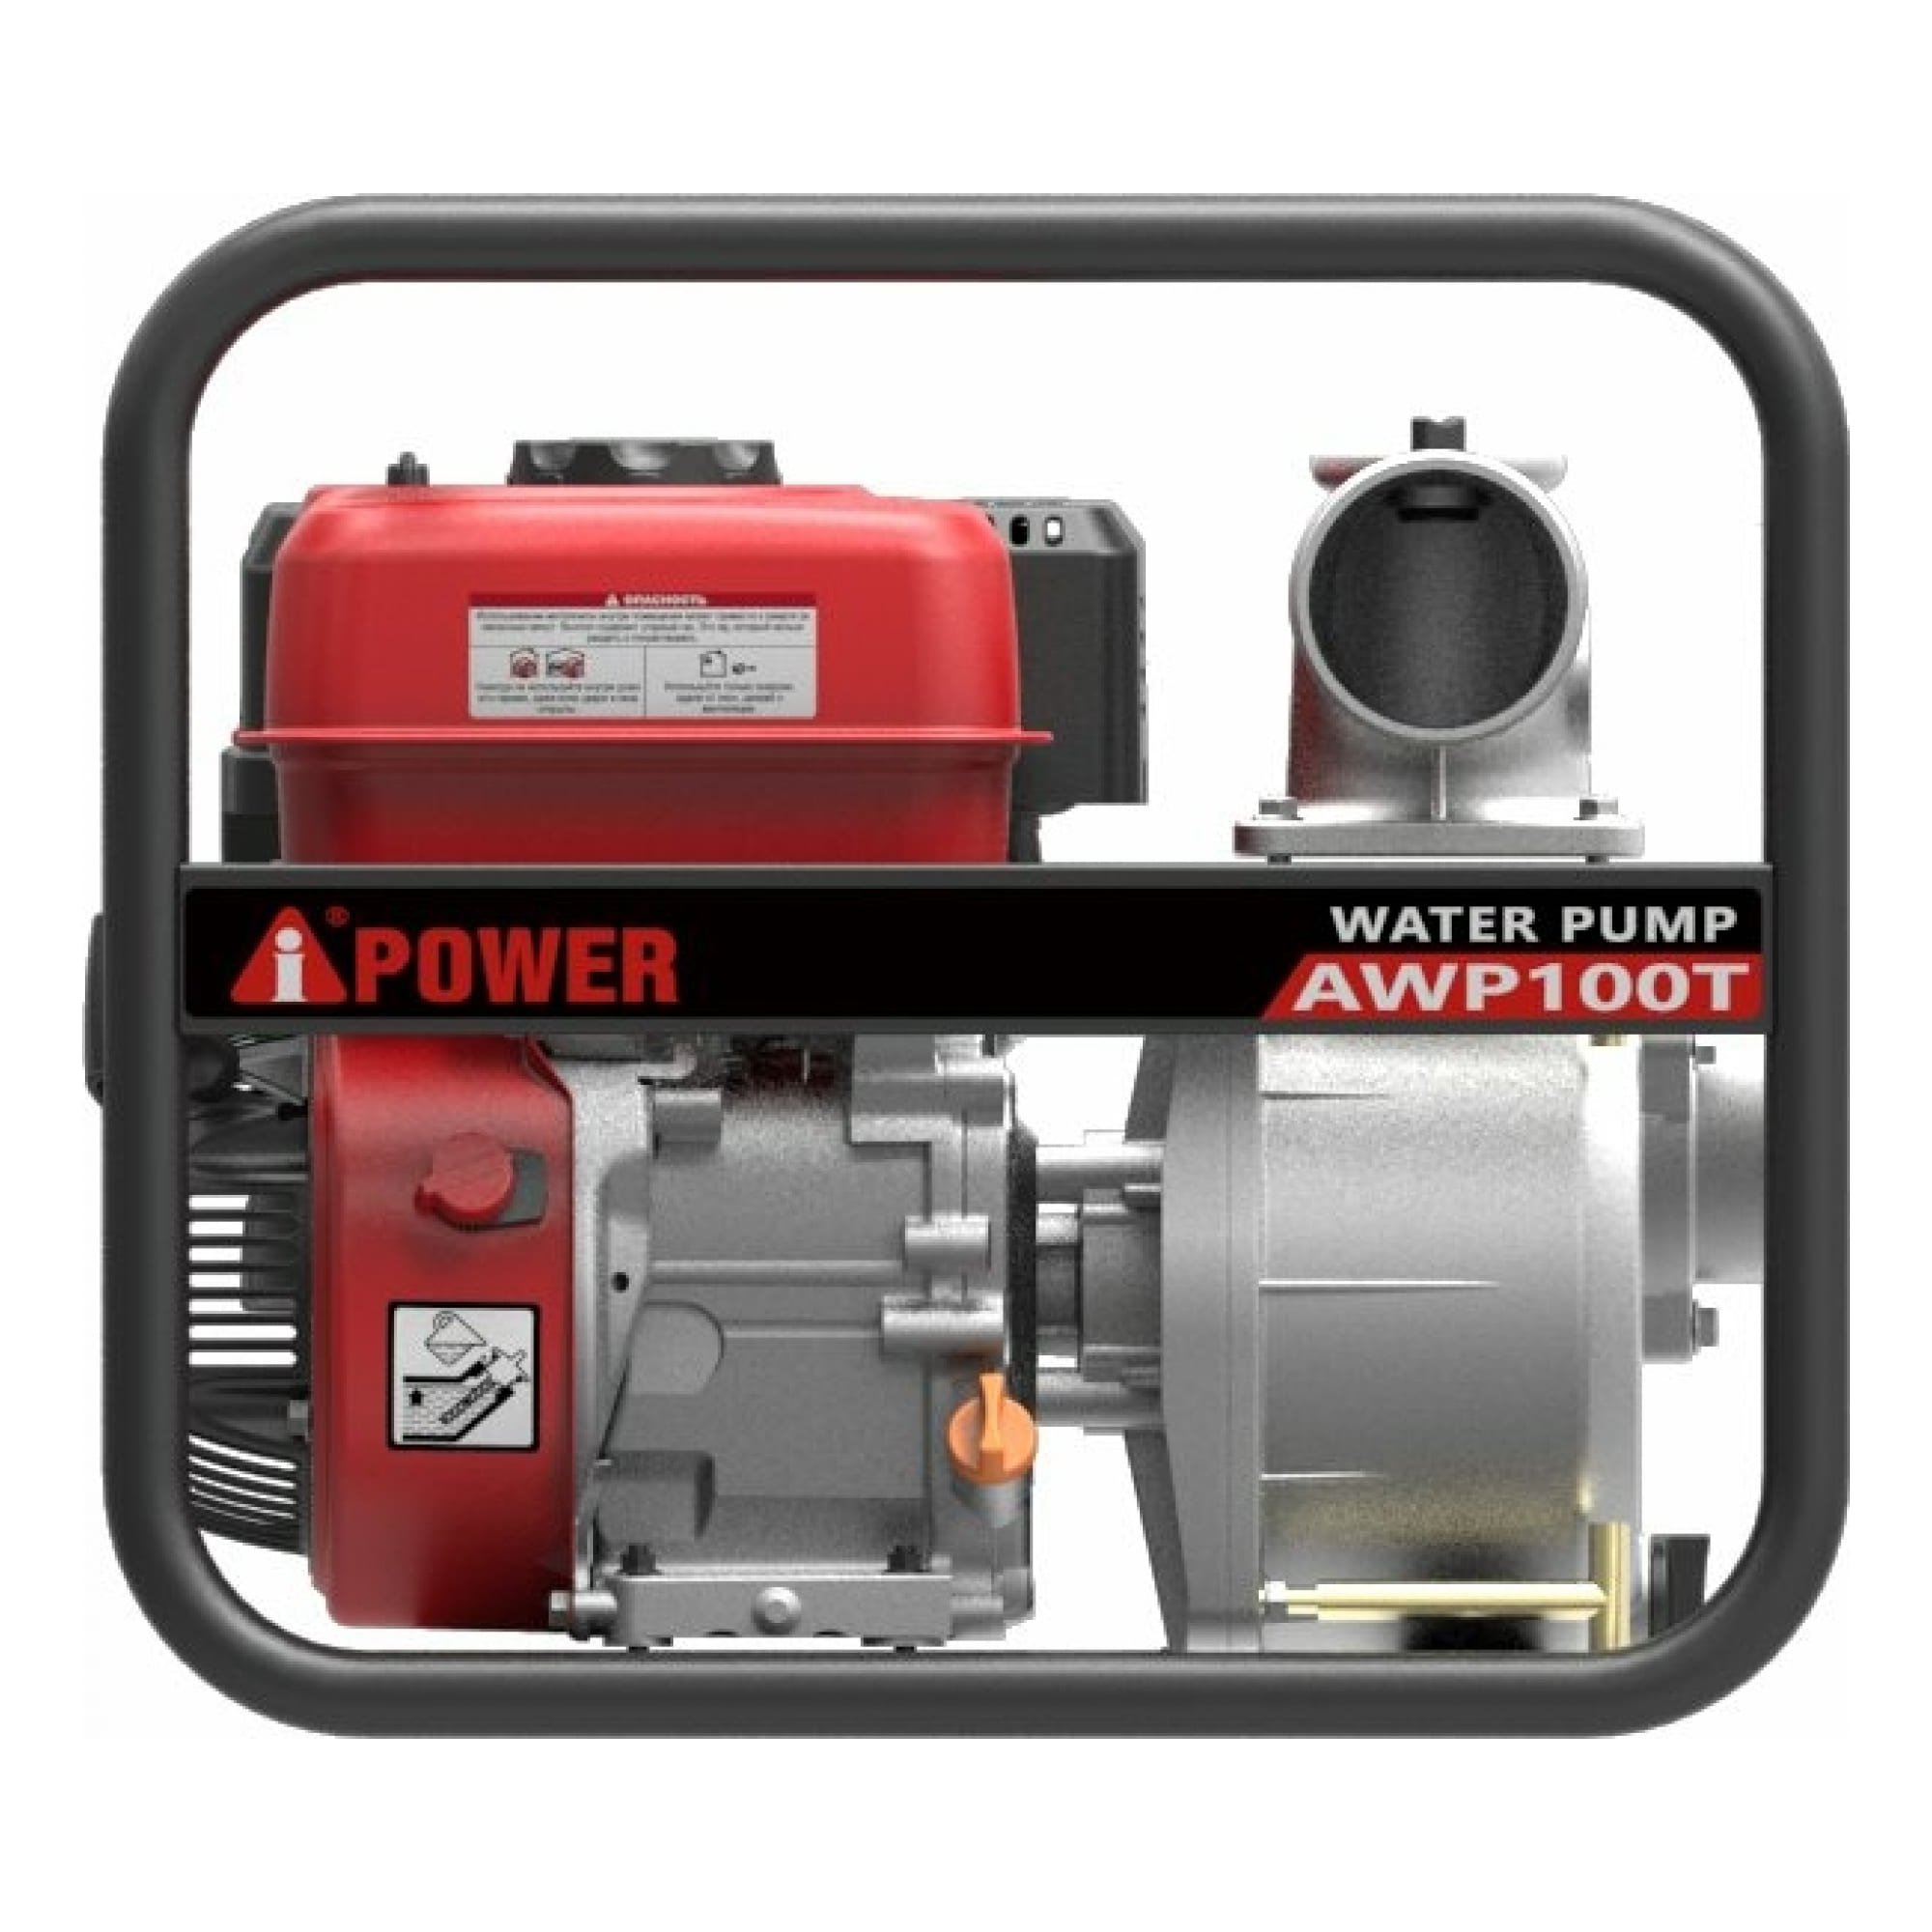 Бензиновая мотопомпа Power для грязной воды AWP 100T, цвет серый - фото 8